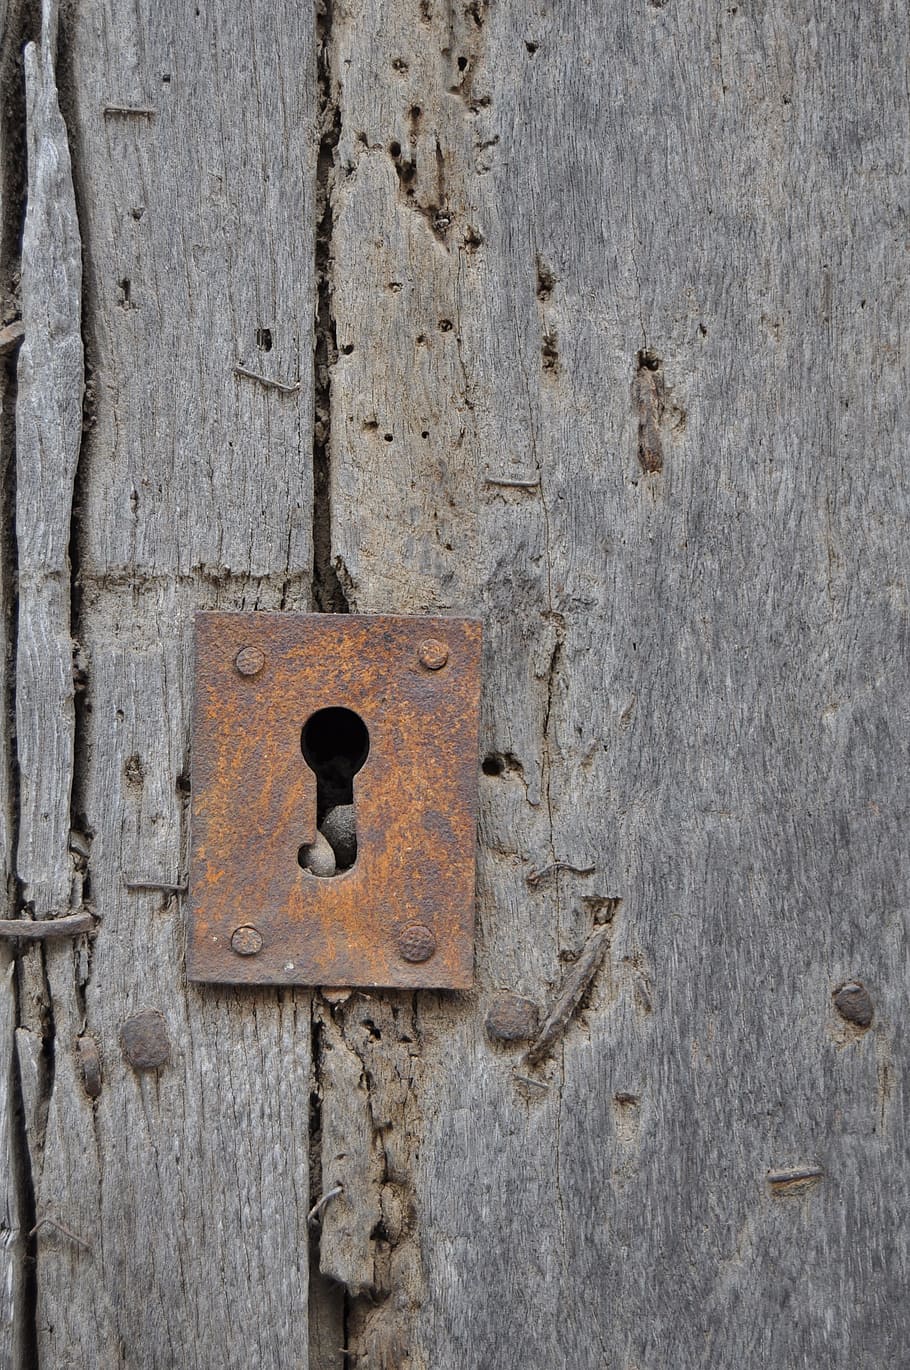 door, bolt, wood, lock, old, iron, rusty, old door, worn, oxide